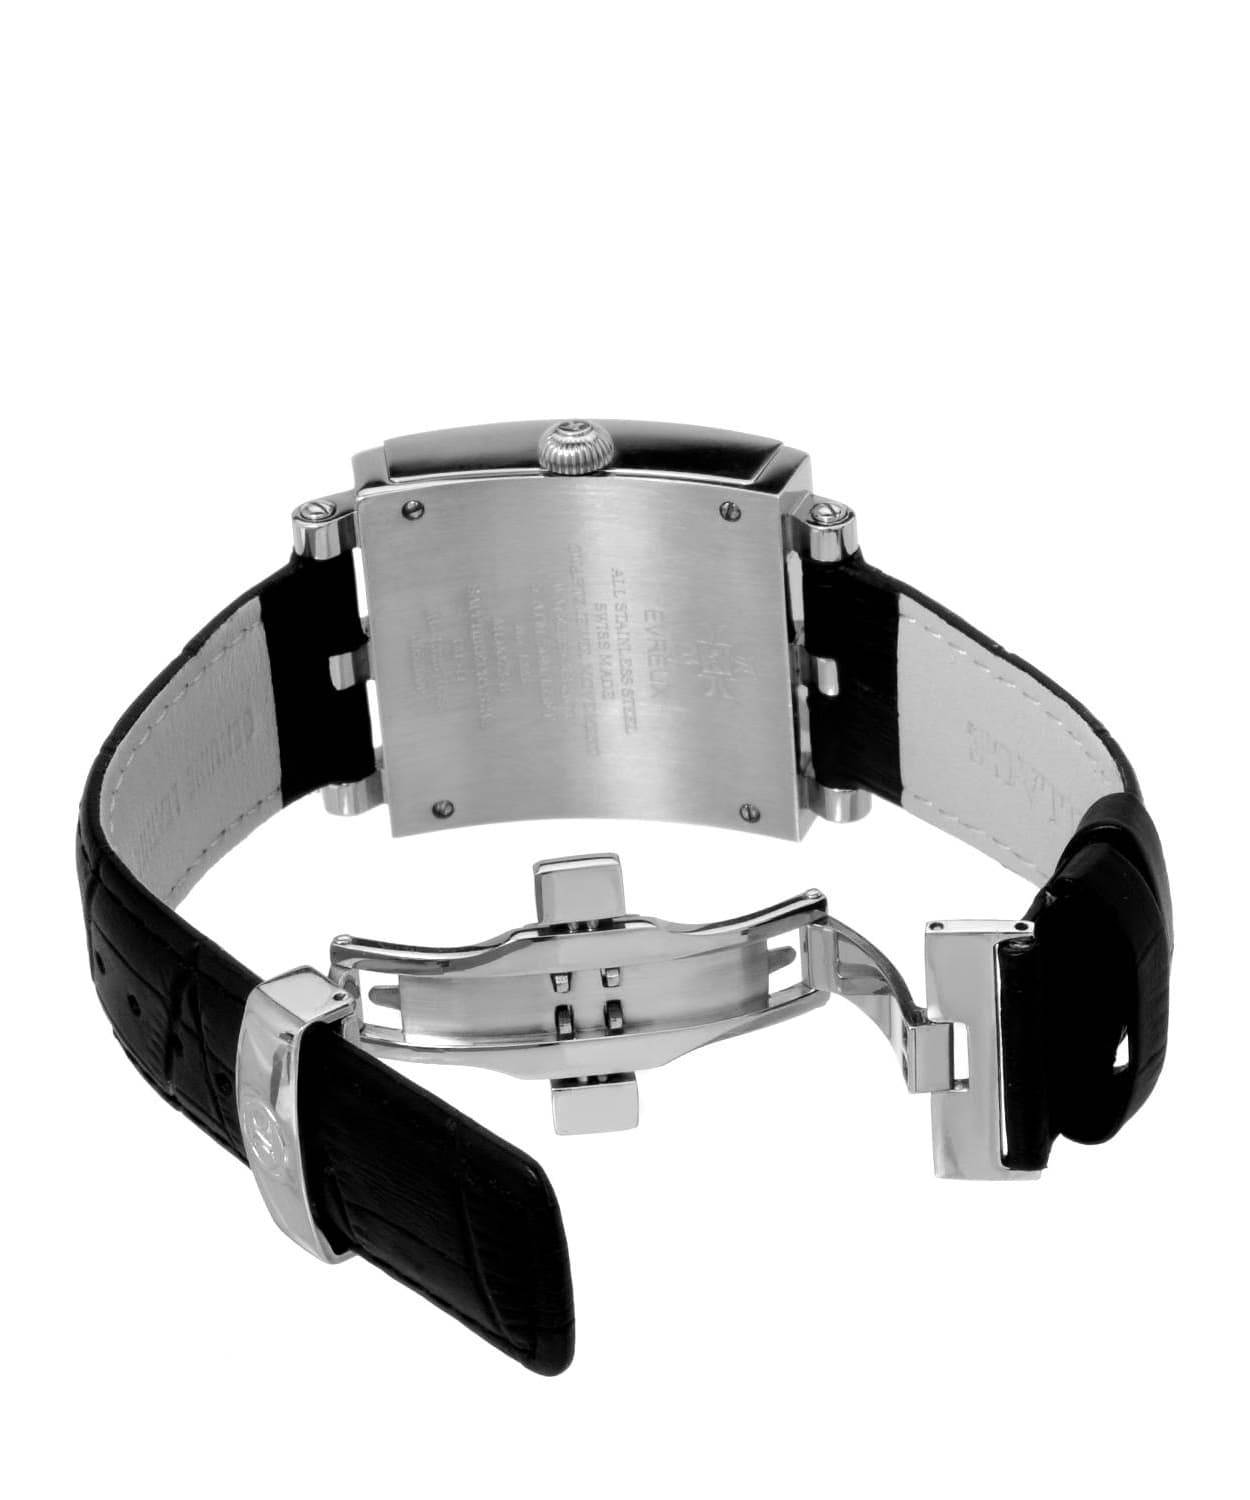 Millage Evreux Collection Model M4326 Watch - Swiss Quartz Movement View 3